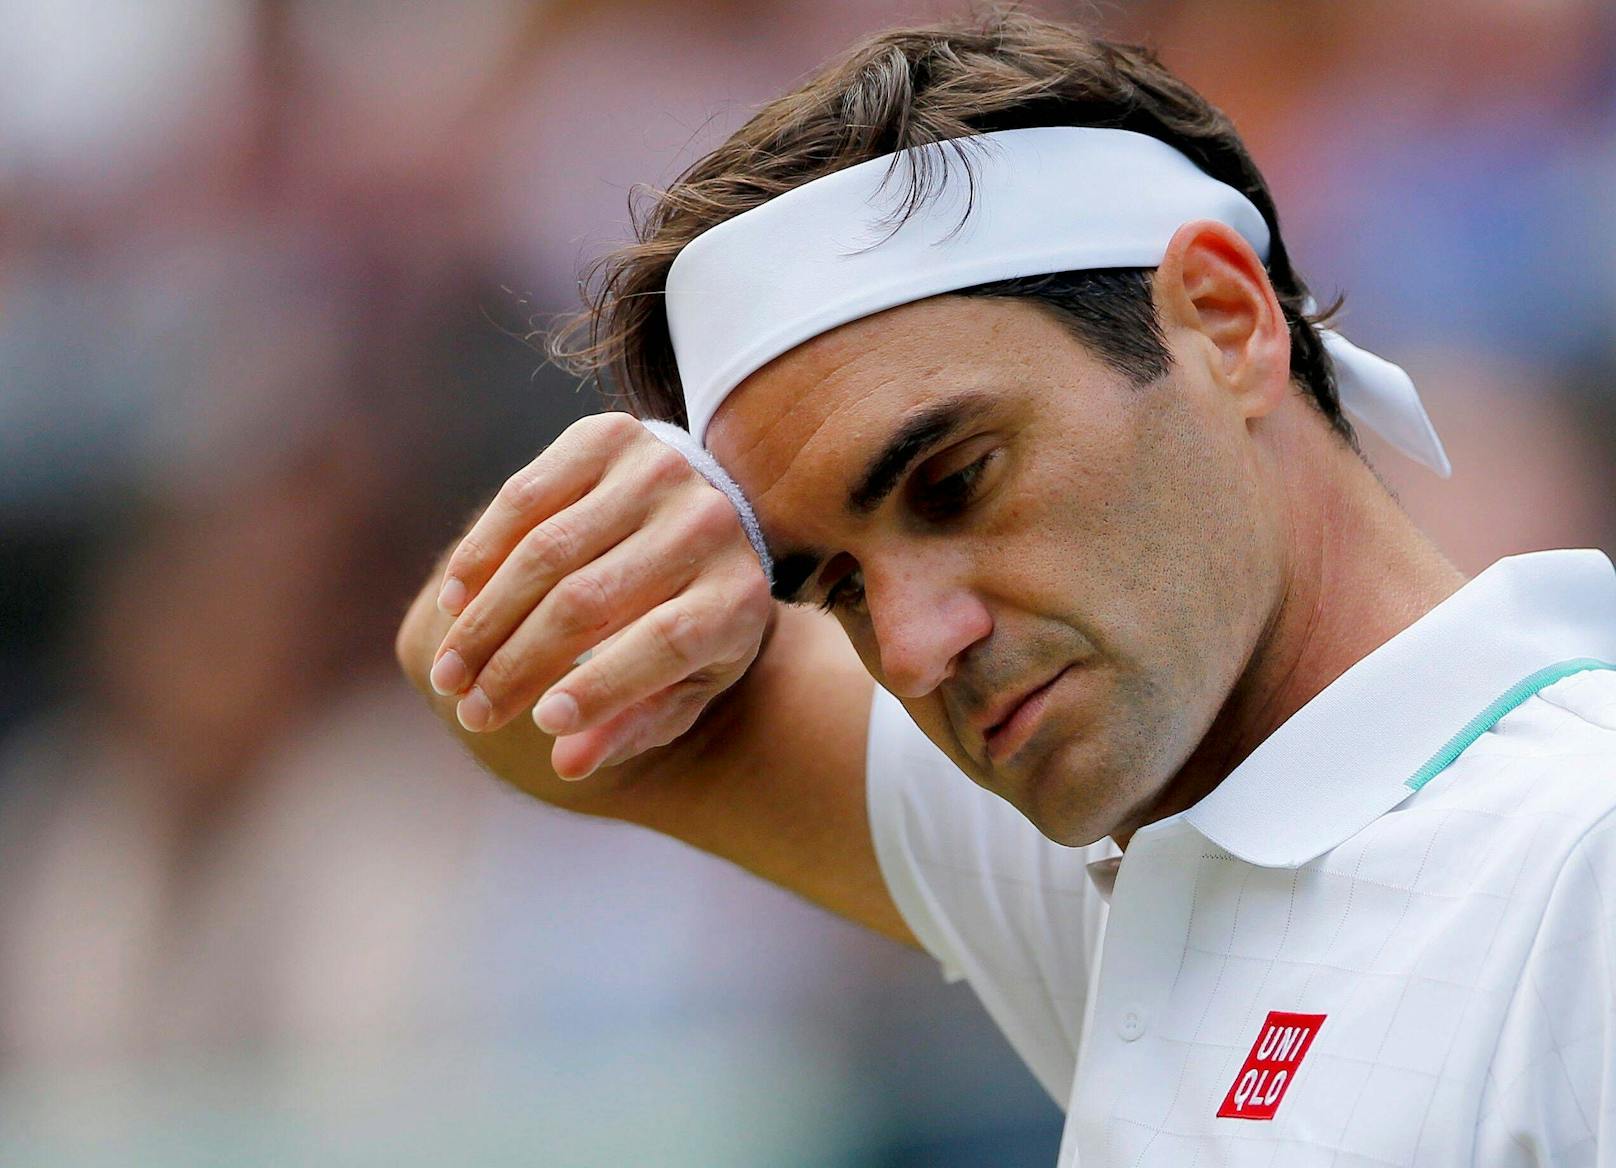 Völlig überraschend – Roger Federer beendet Karriere